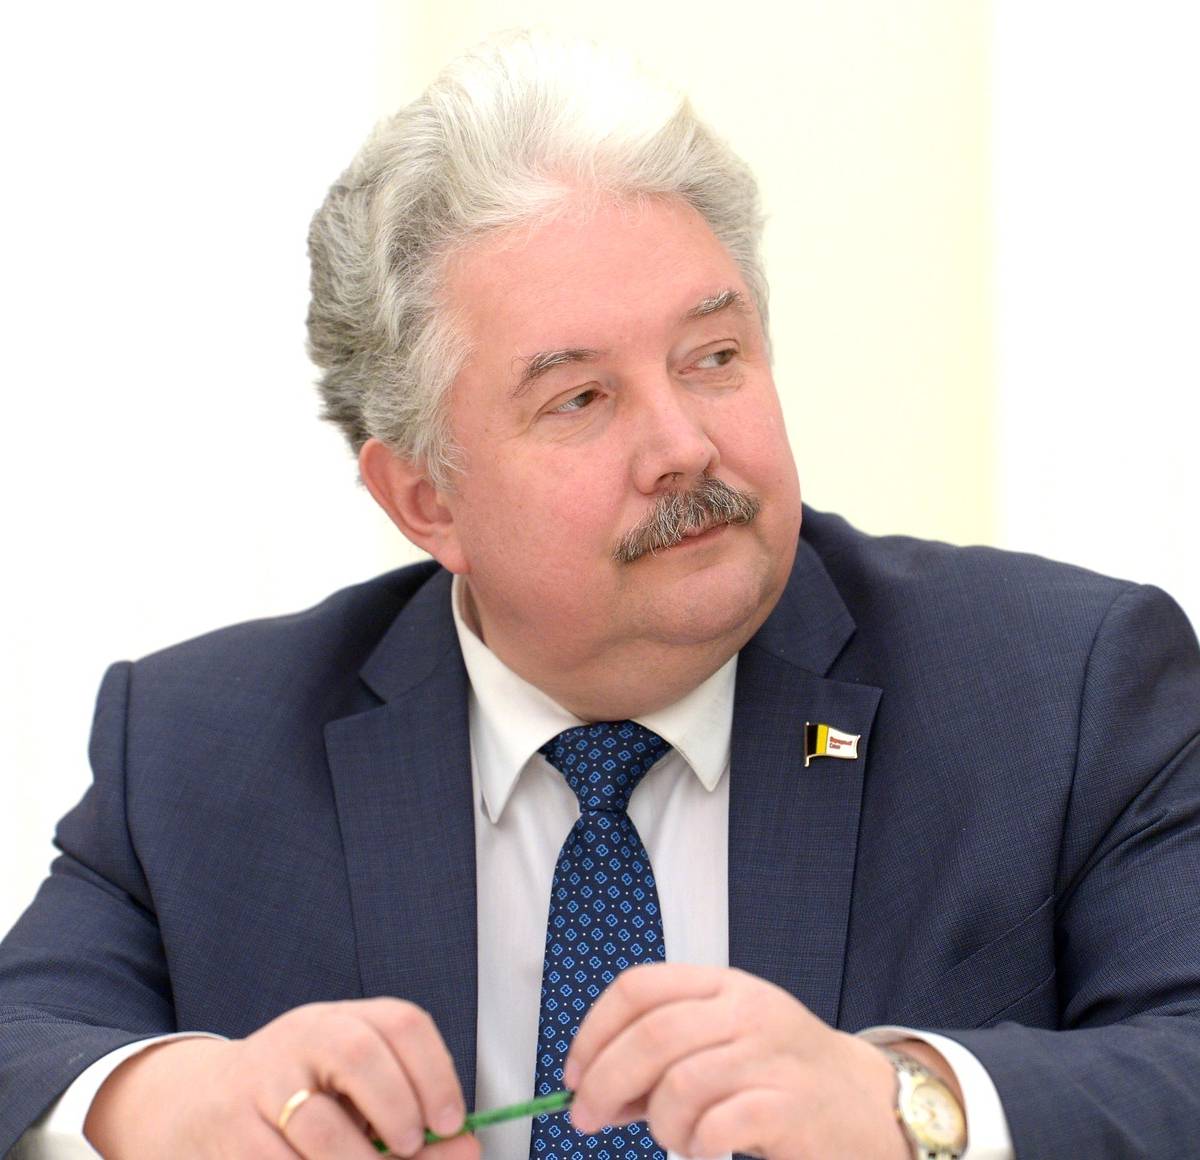 Сергей Бабурин: России нужно создавать конфедерацию славянских стран